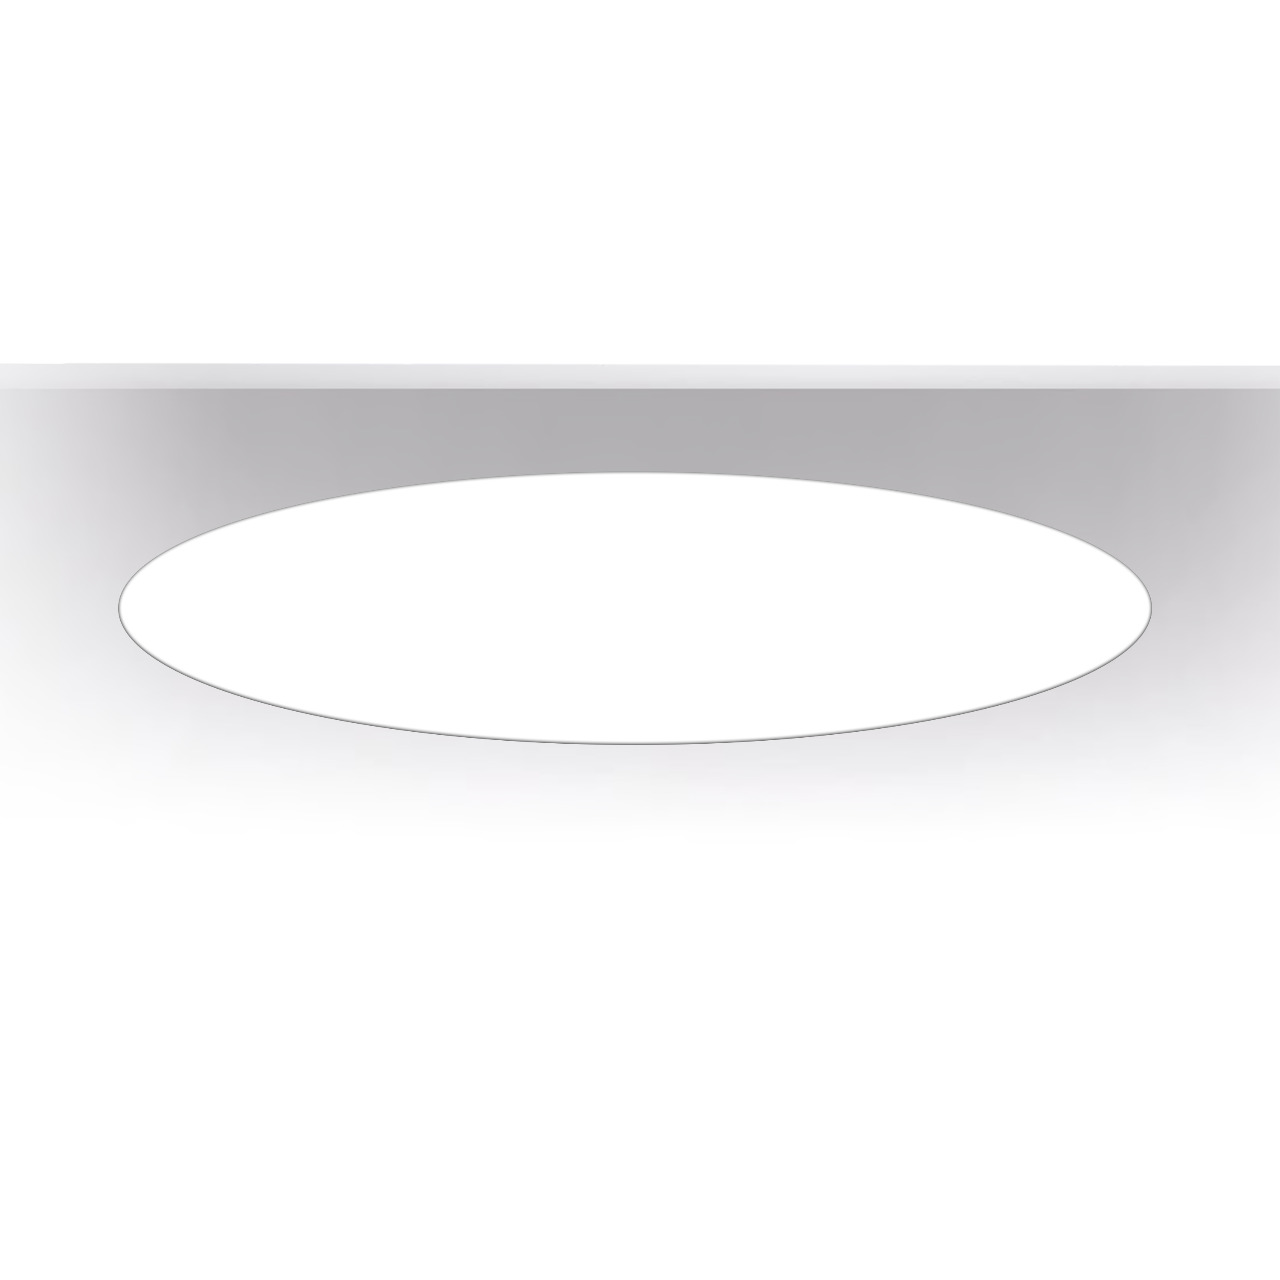 ART-inROUND FLEX LED Светильник встраиваемый круг Встраиваемые светильники 